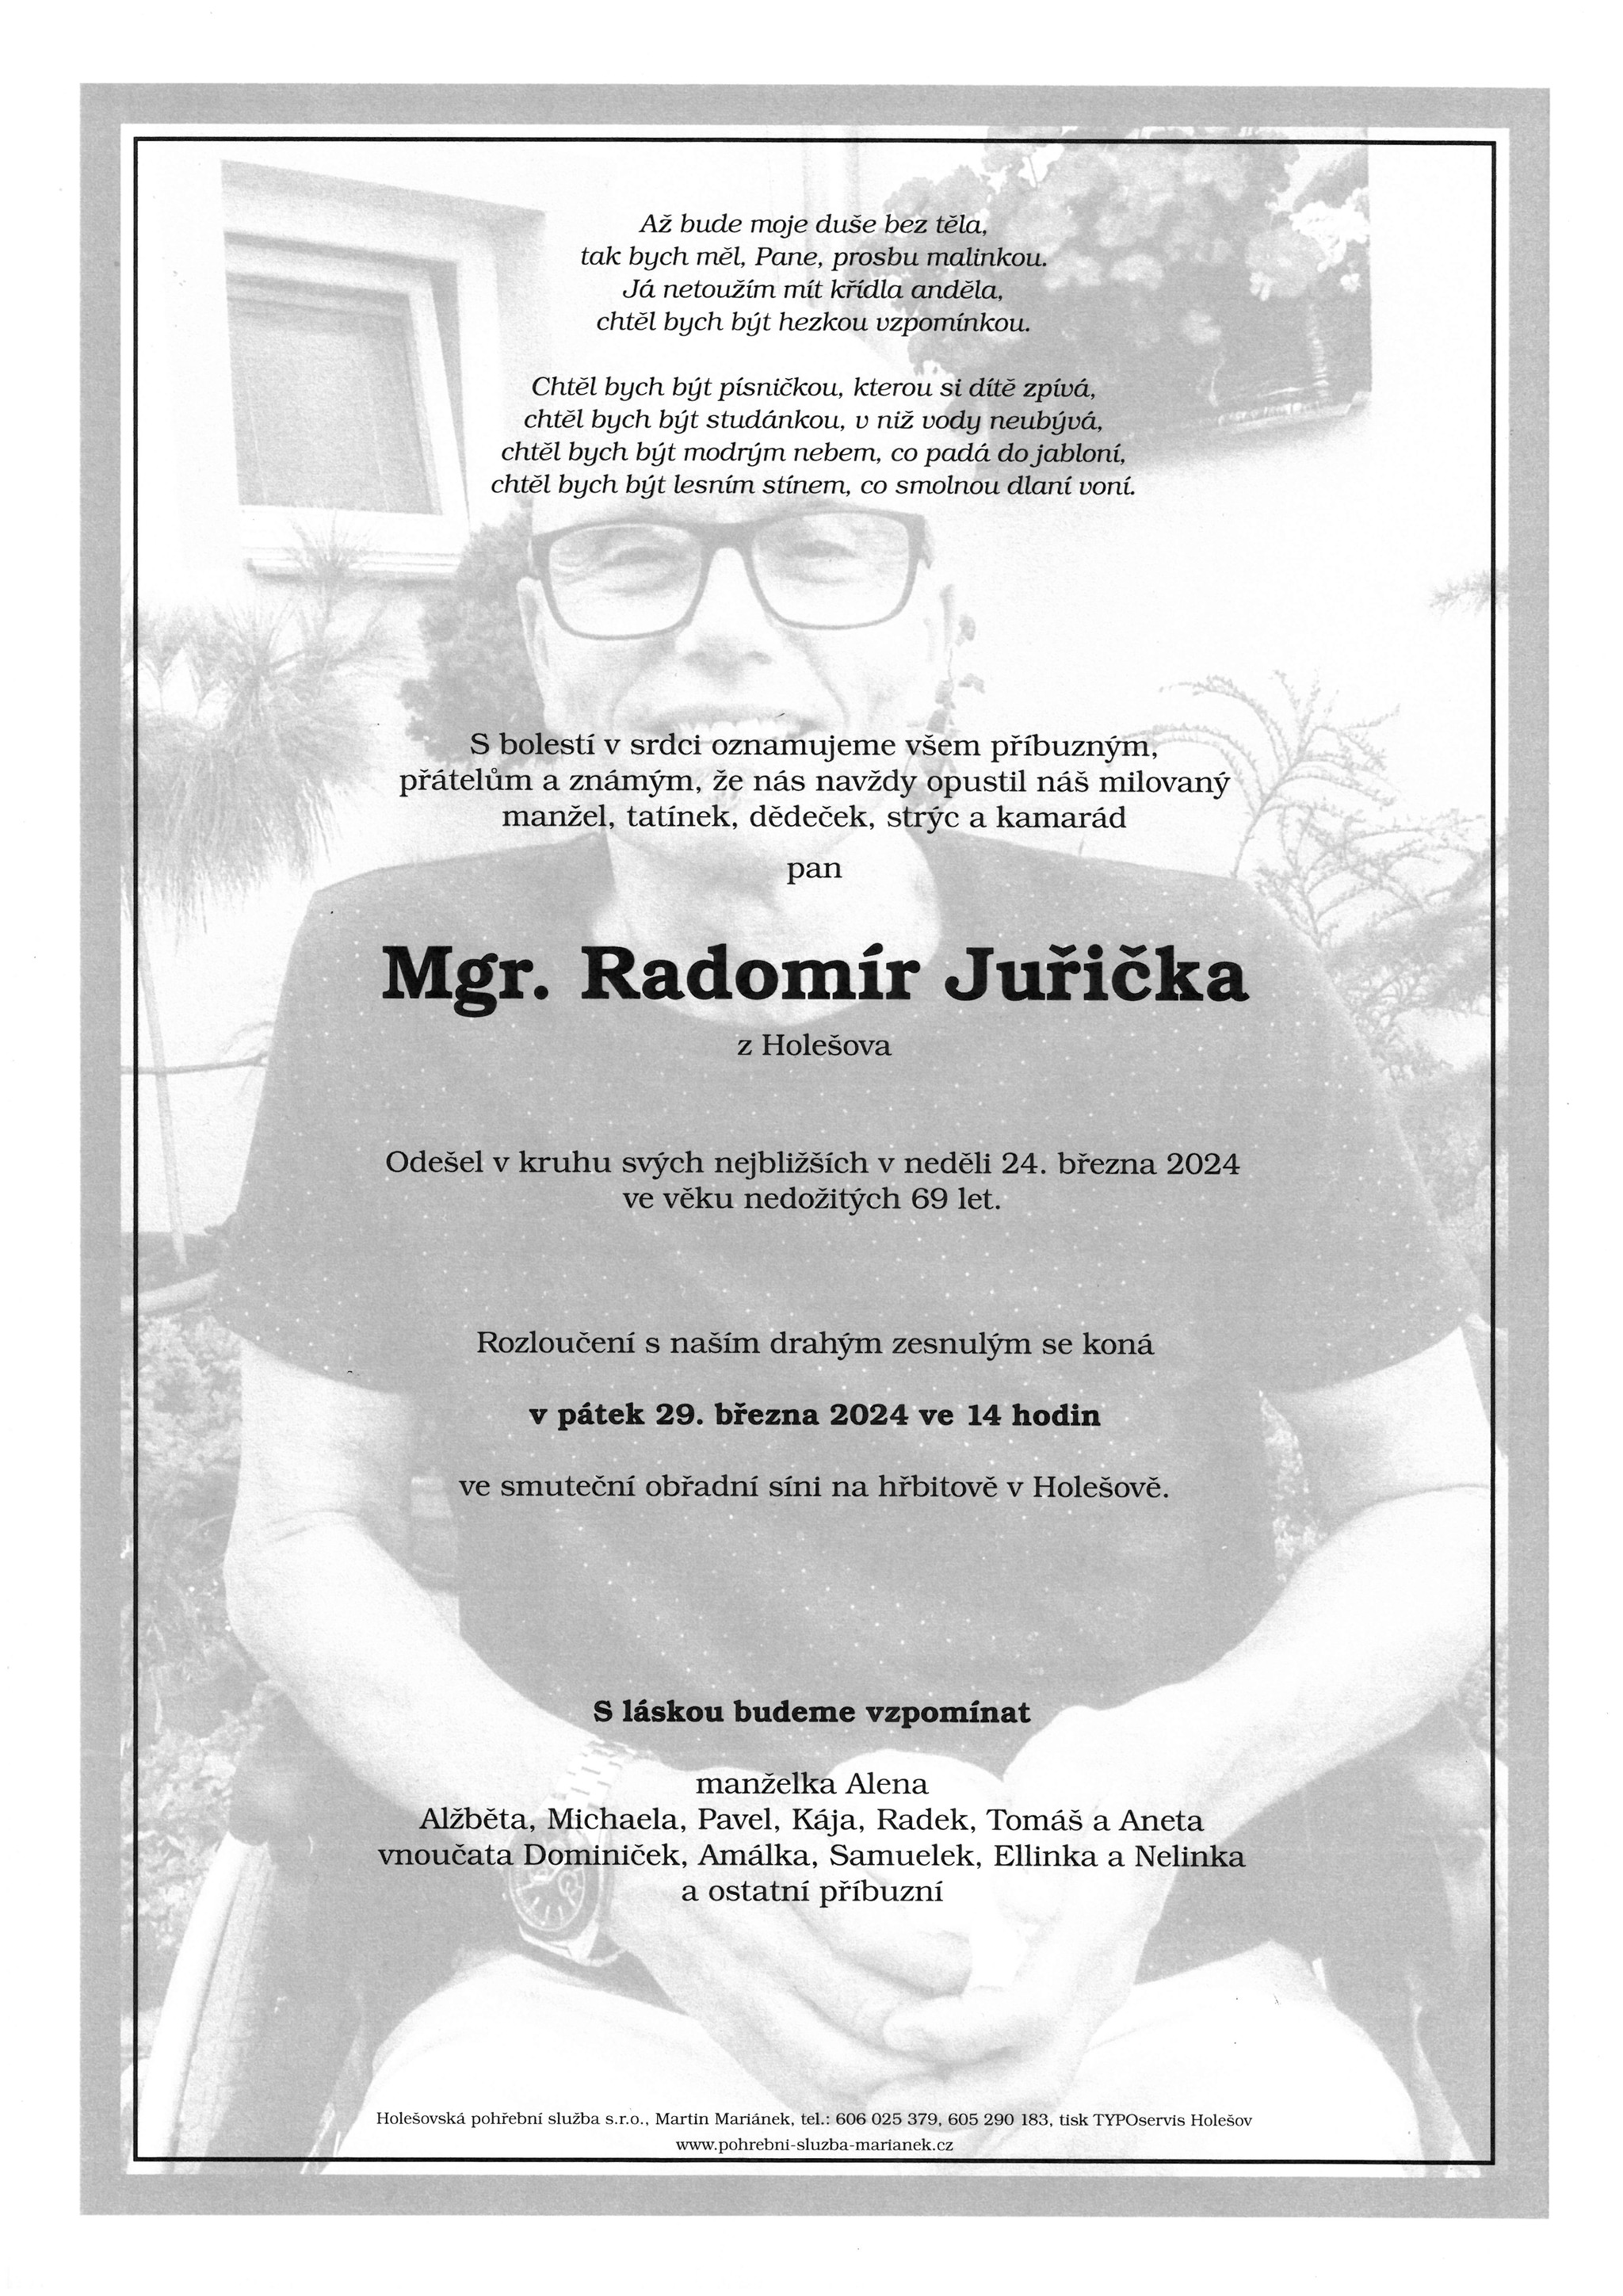 Mgr. Radomír Juřička